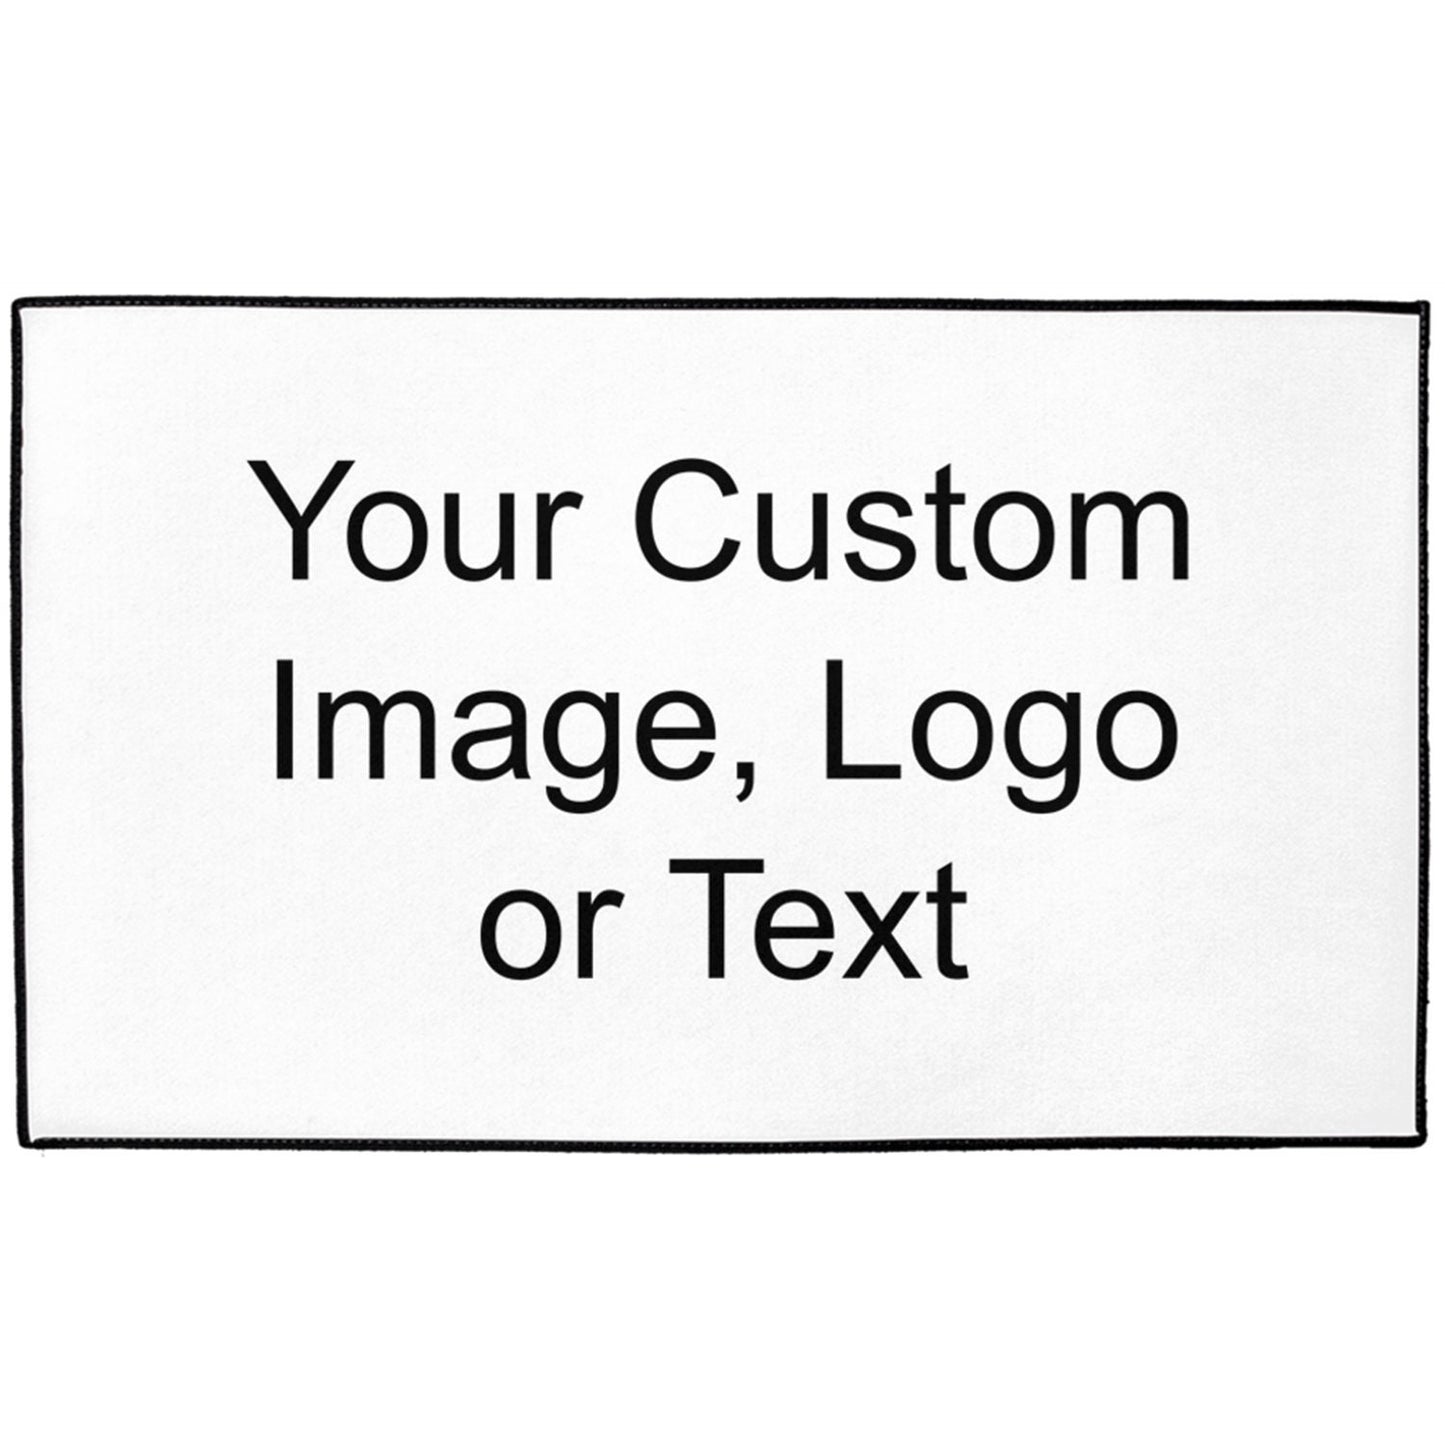 Indoor/Outdoor Custom Floor Mat company logo rug custom image rugs custom text rug personalized floor mats personalised outdoor rug photo